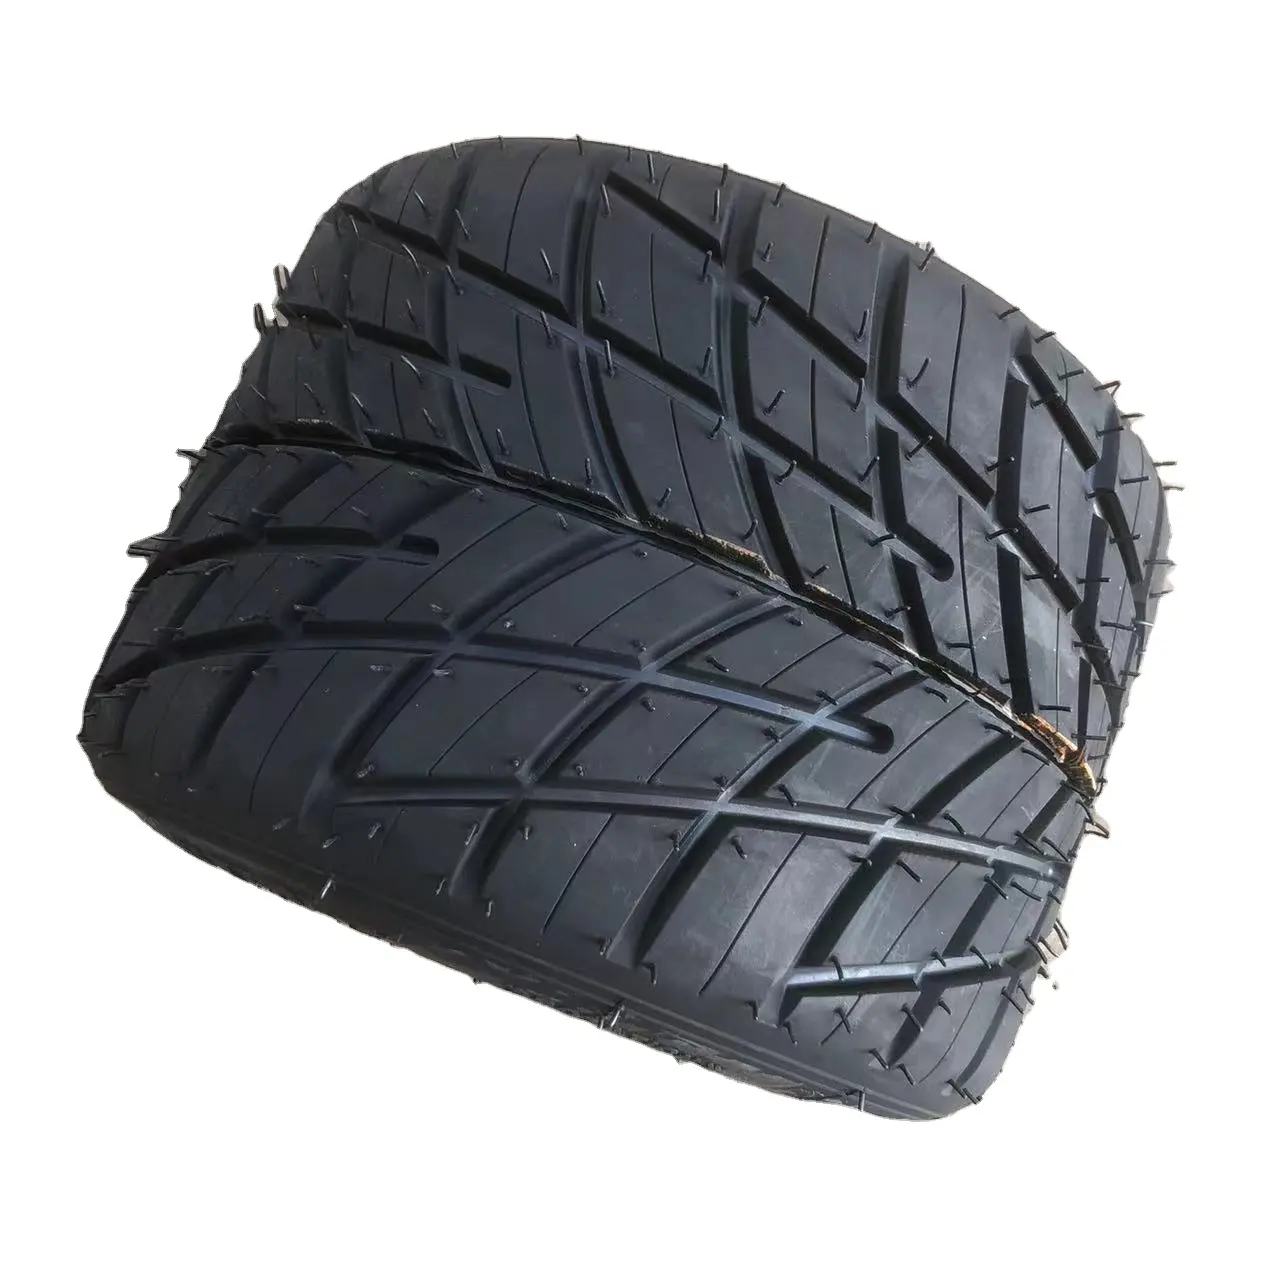 젖은 타이어/비 타이어 카트 11X7.1-5 /11X6.0-5 카트 타이어